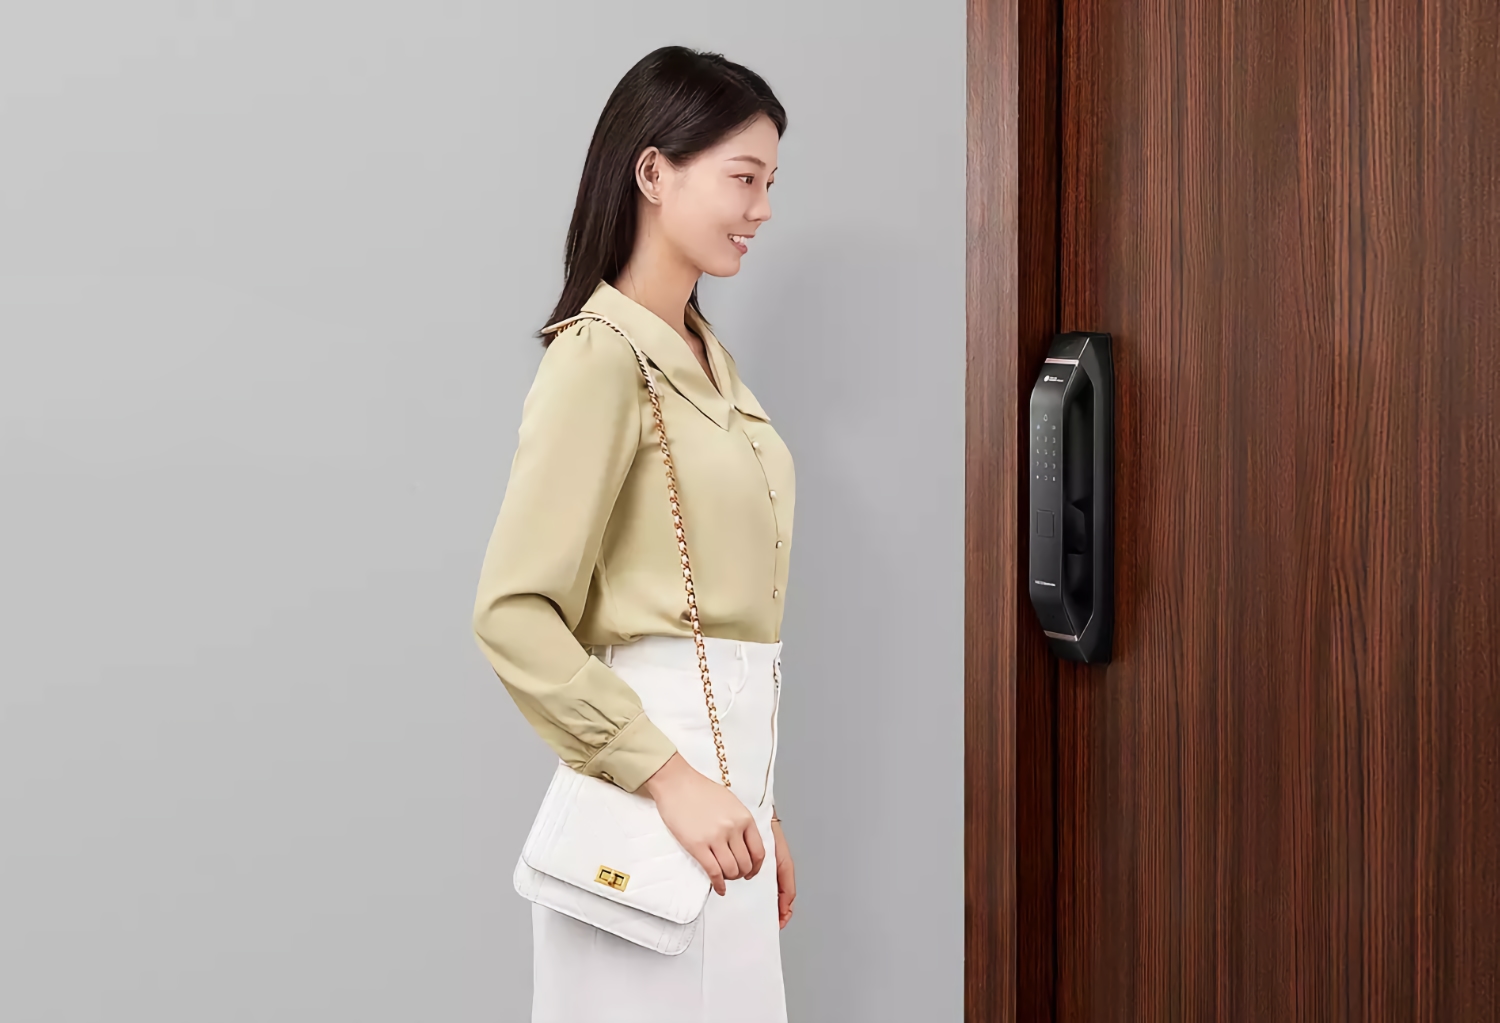 Huawei unveils Smart Selection Dessmann Smart Door Lock: Smart Door Lock with Face Unlock